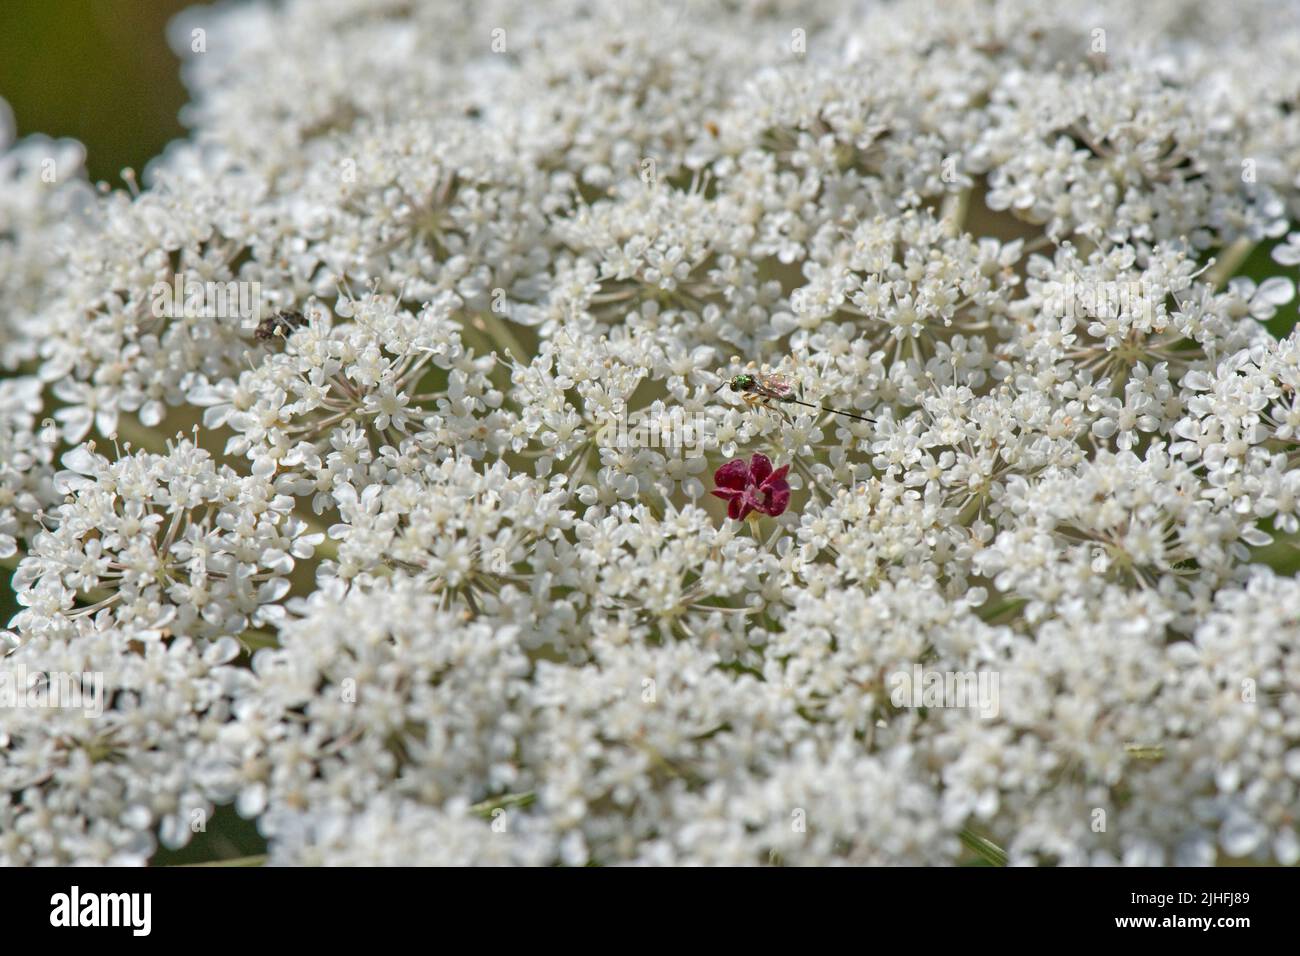 Carota selvaggia o merletto della regina Anna (Daucus carota) fiori bianchi di un umbel con singolo scuro, rosso, nettare producendo fiore nel centro, Berkshire, Ju Foto Stock